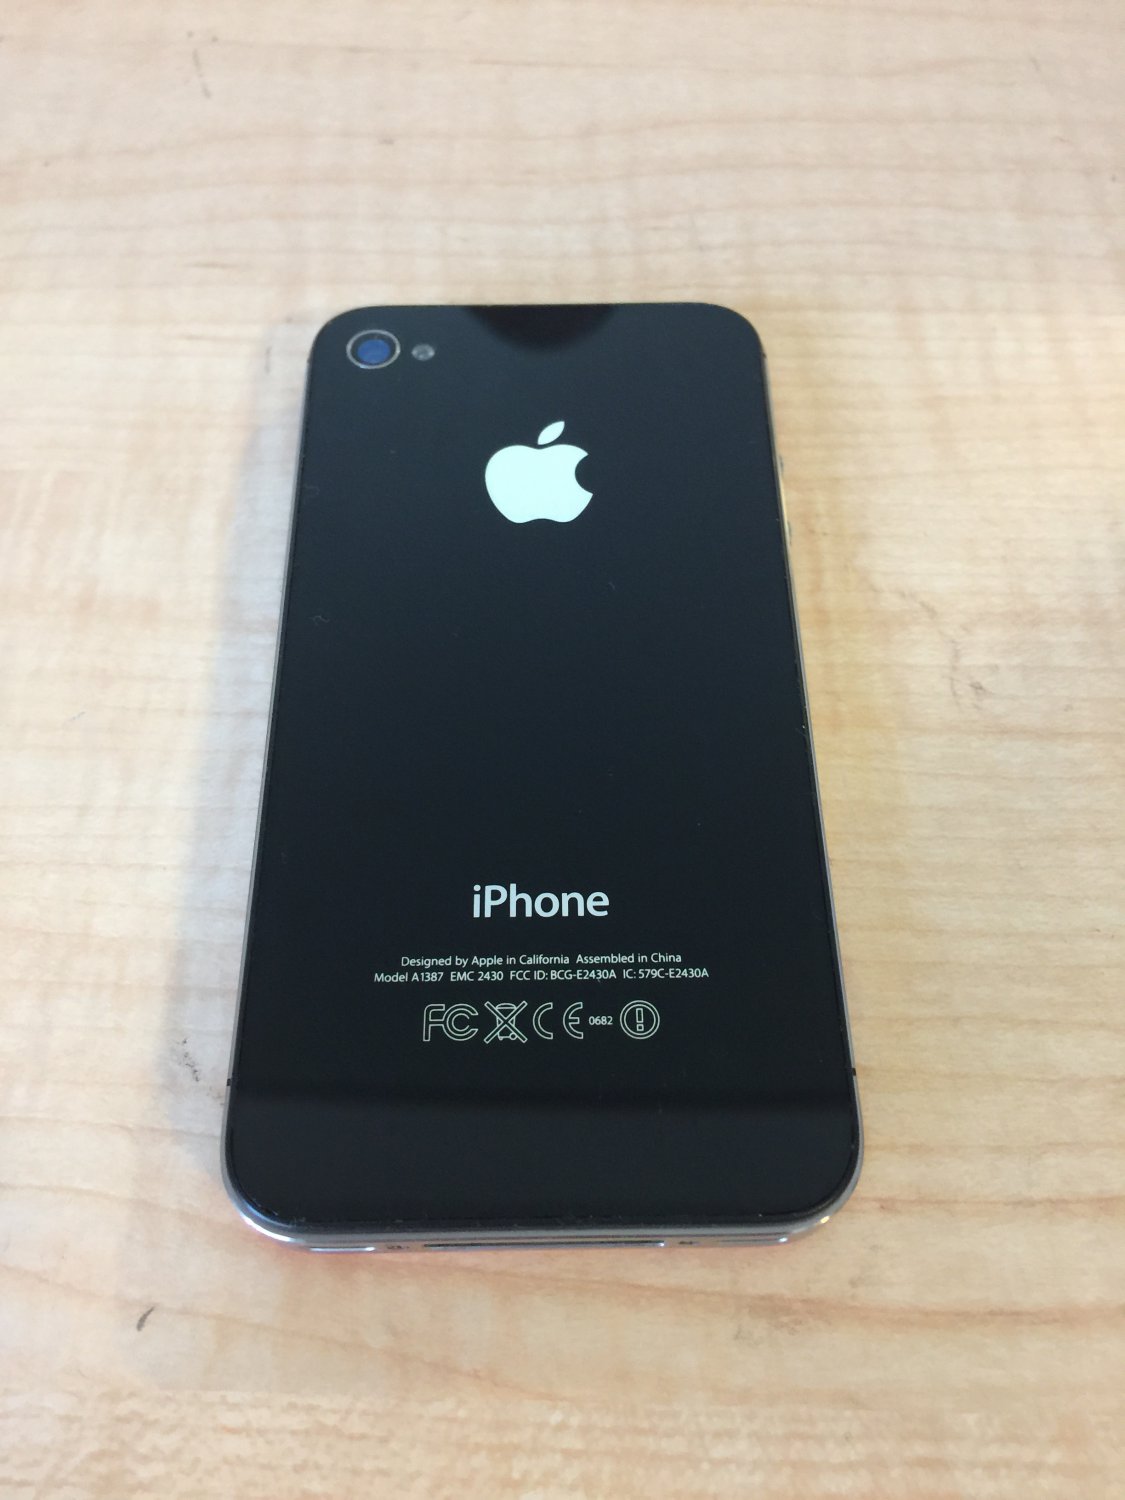 お買得 iPhone - 4s Black 32 Technical GB au Black スマートフォン 